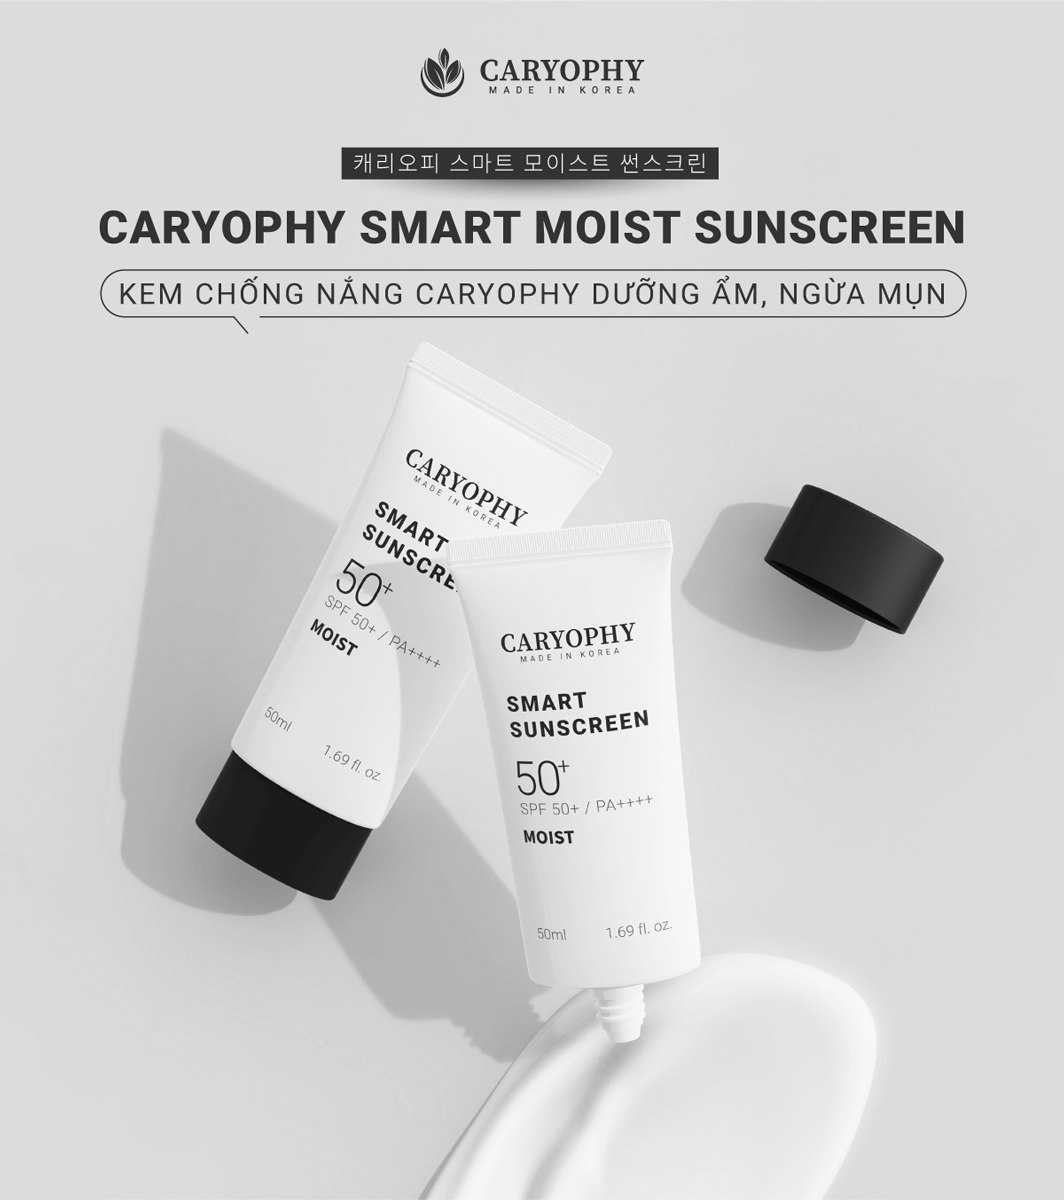 Kem Chống Nắng Dưỡng Ẩm, Ngừa Mụn Caryophy Smart Moist Sunscreen SPF 50+ / PA++++ 50ml hiện đã có mặt tại Hasaki.